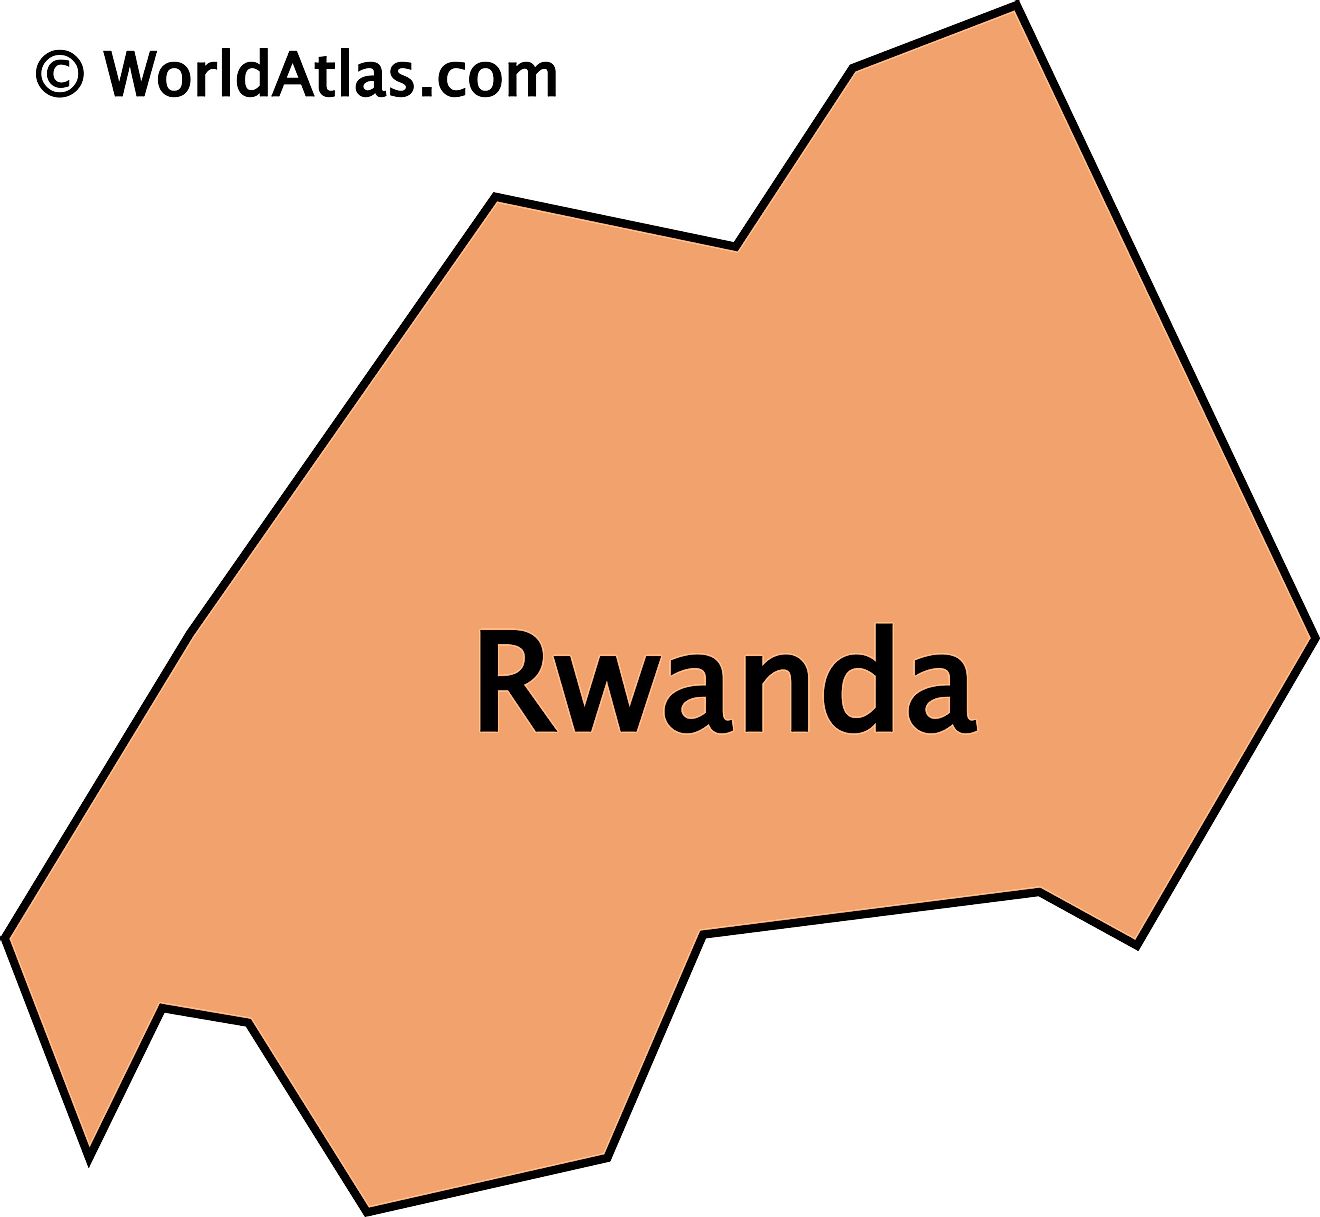 Mapa de contorno de Ruanda